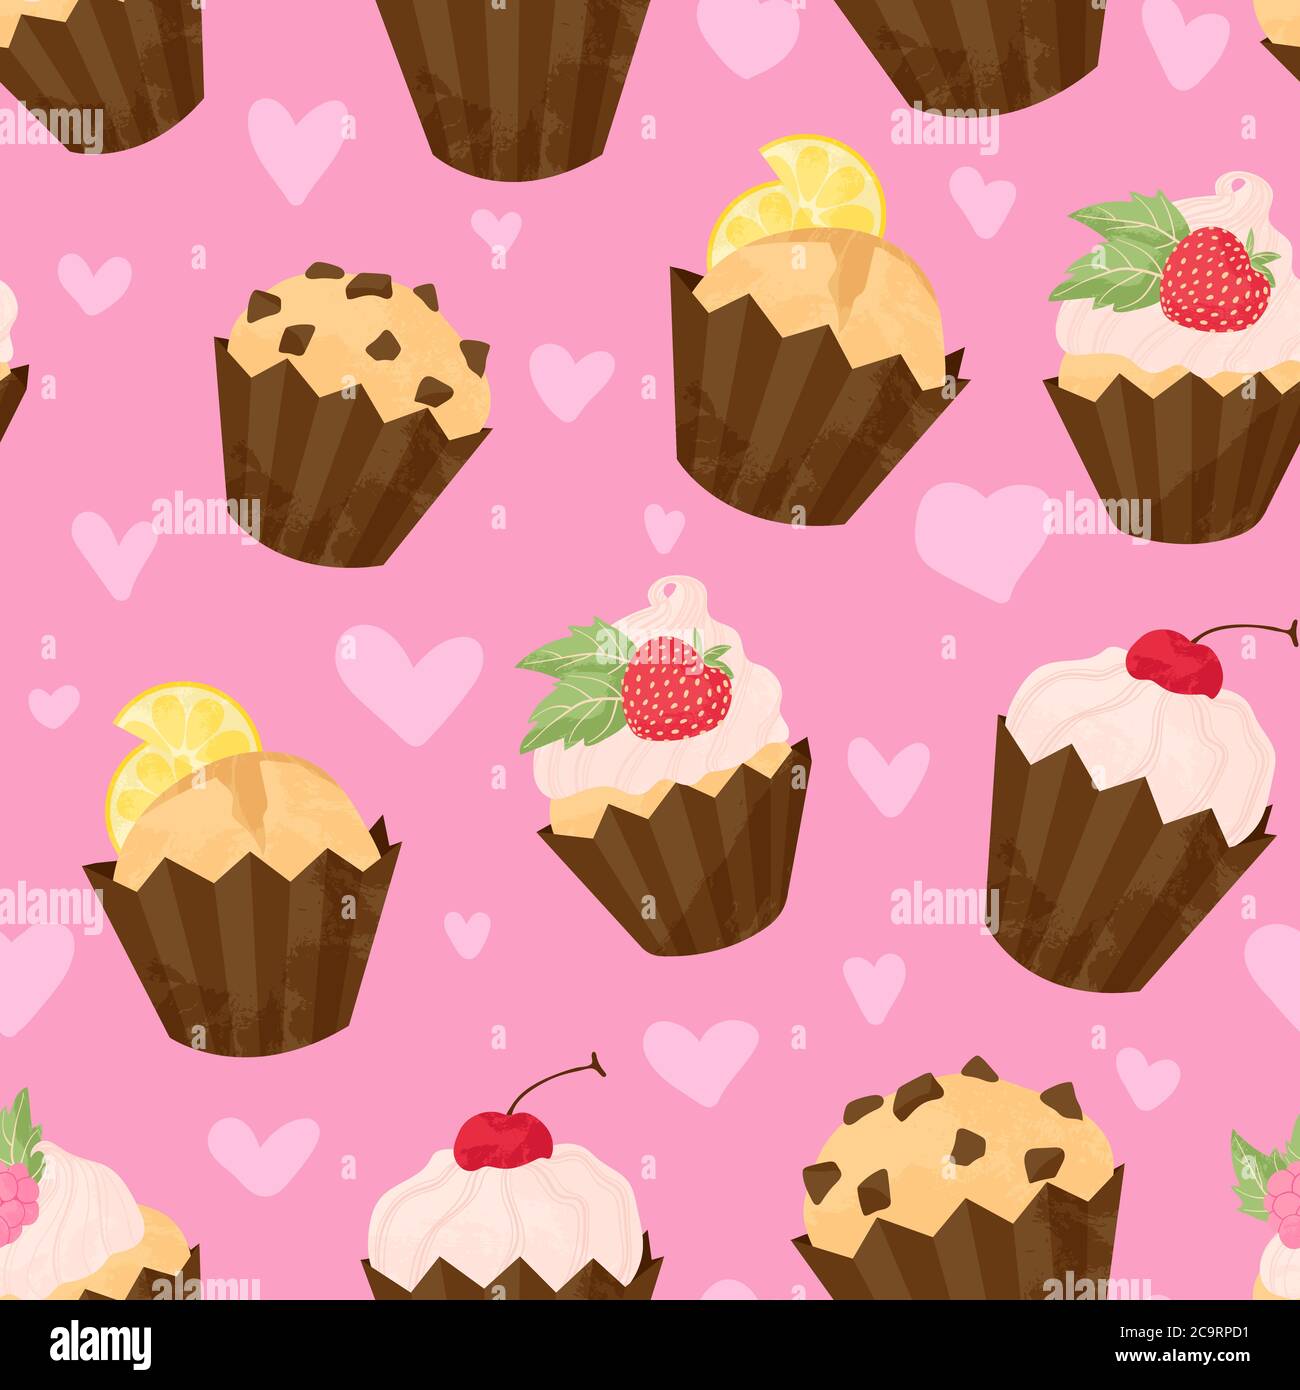 Verschiedene Cupcake und Muffin Vektor nahtlose Muster in flachen Cartoons Stil. Alles gute zum Geburtstag Cupcake Hintergrund mit Früchten und Beeren. Niedliche bunte de Stock Vektor